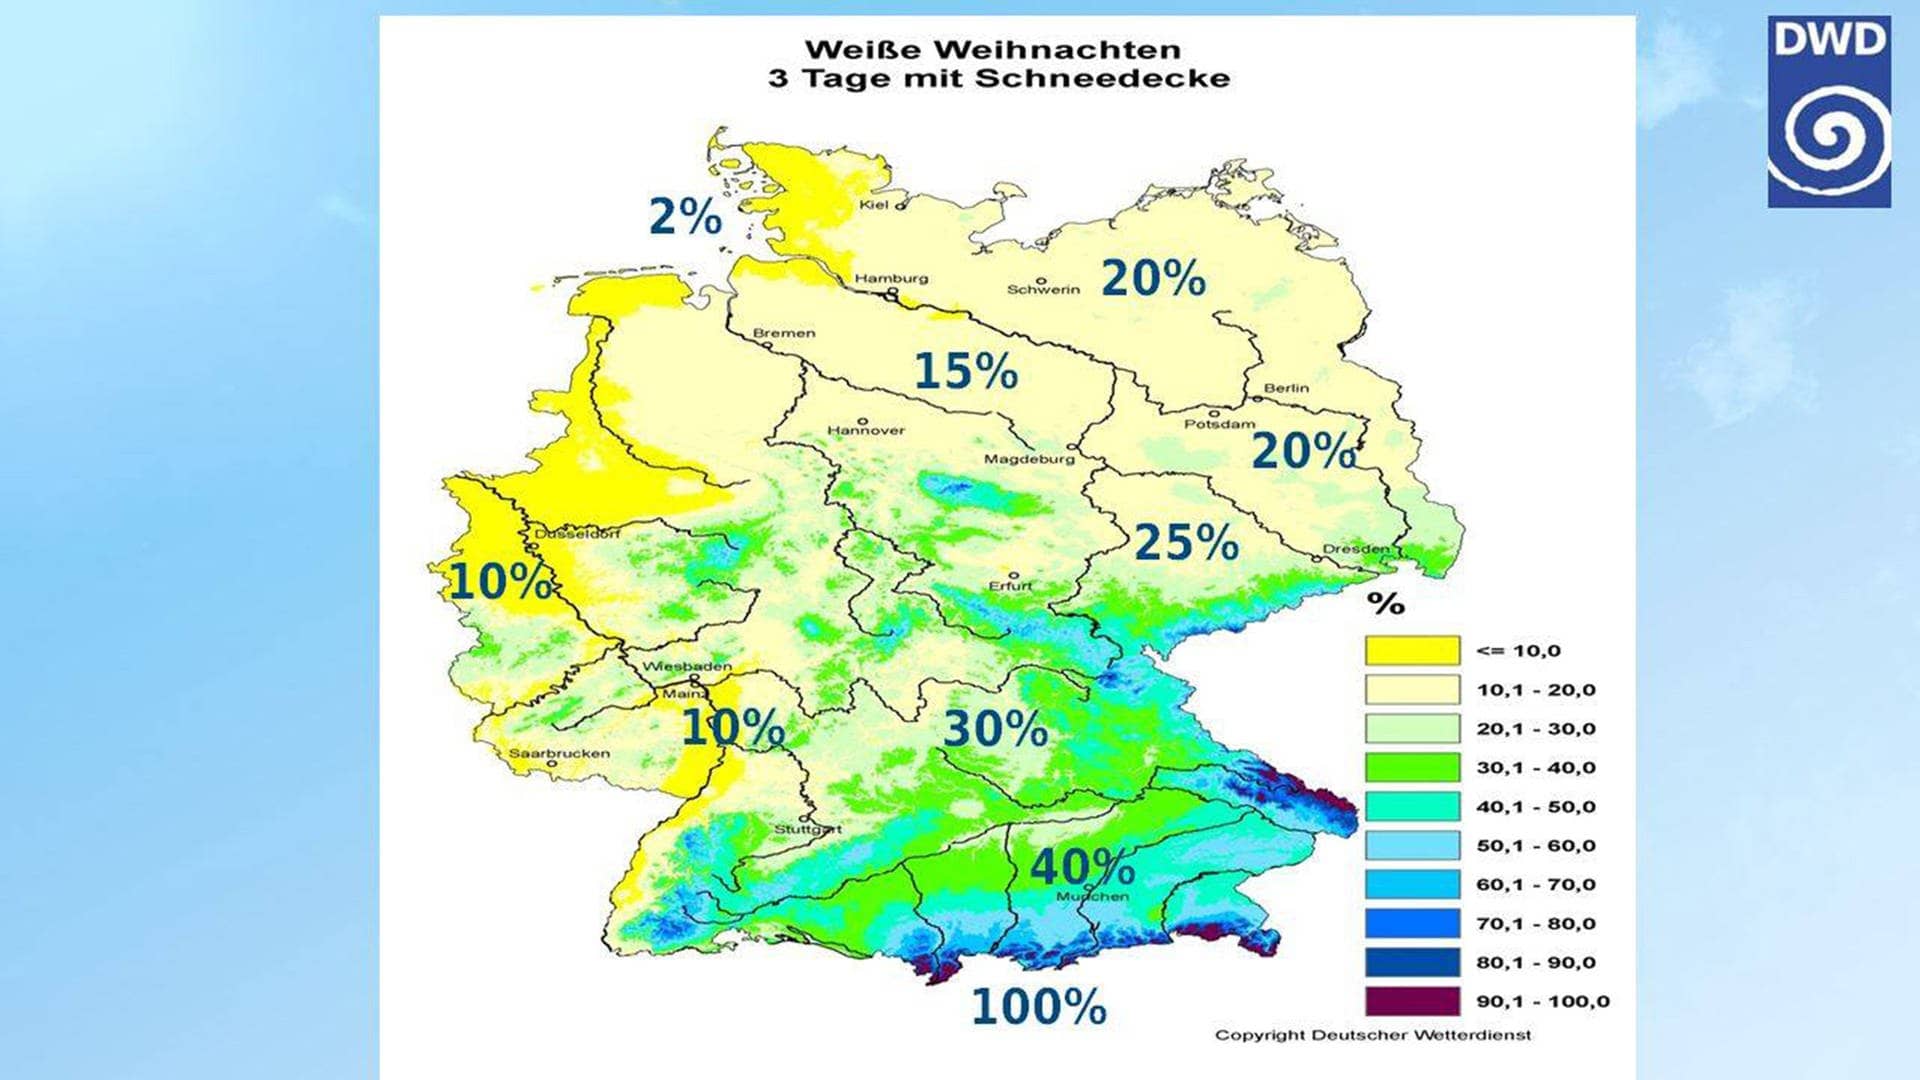 Wahrscheinlichkeit für weiße Weihnachten in Deutschland – ob es 2023 Schnee geben wird zu Heiligabend, geht aus der Karte nicht hervor.